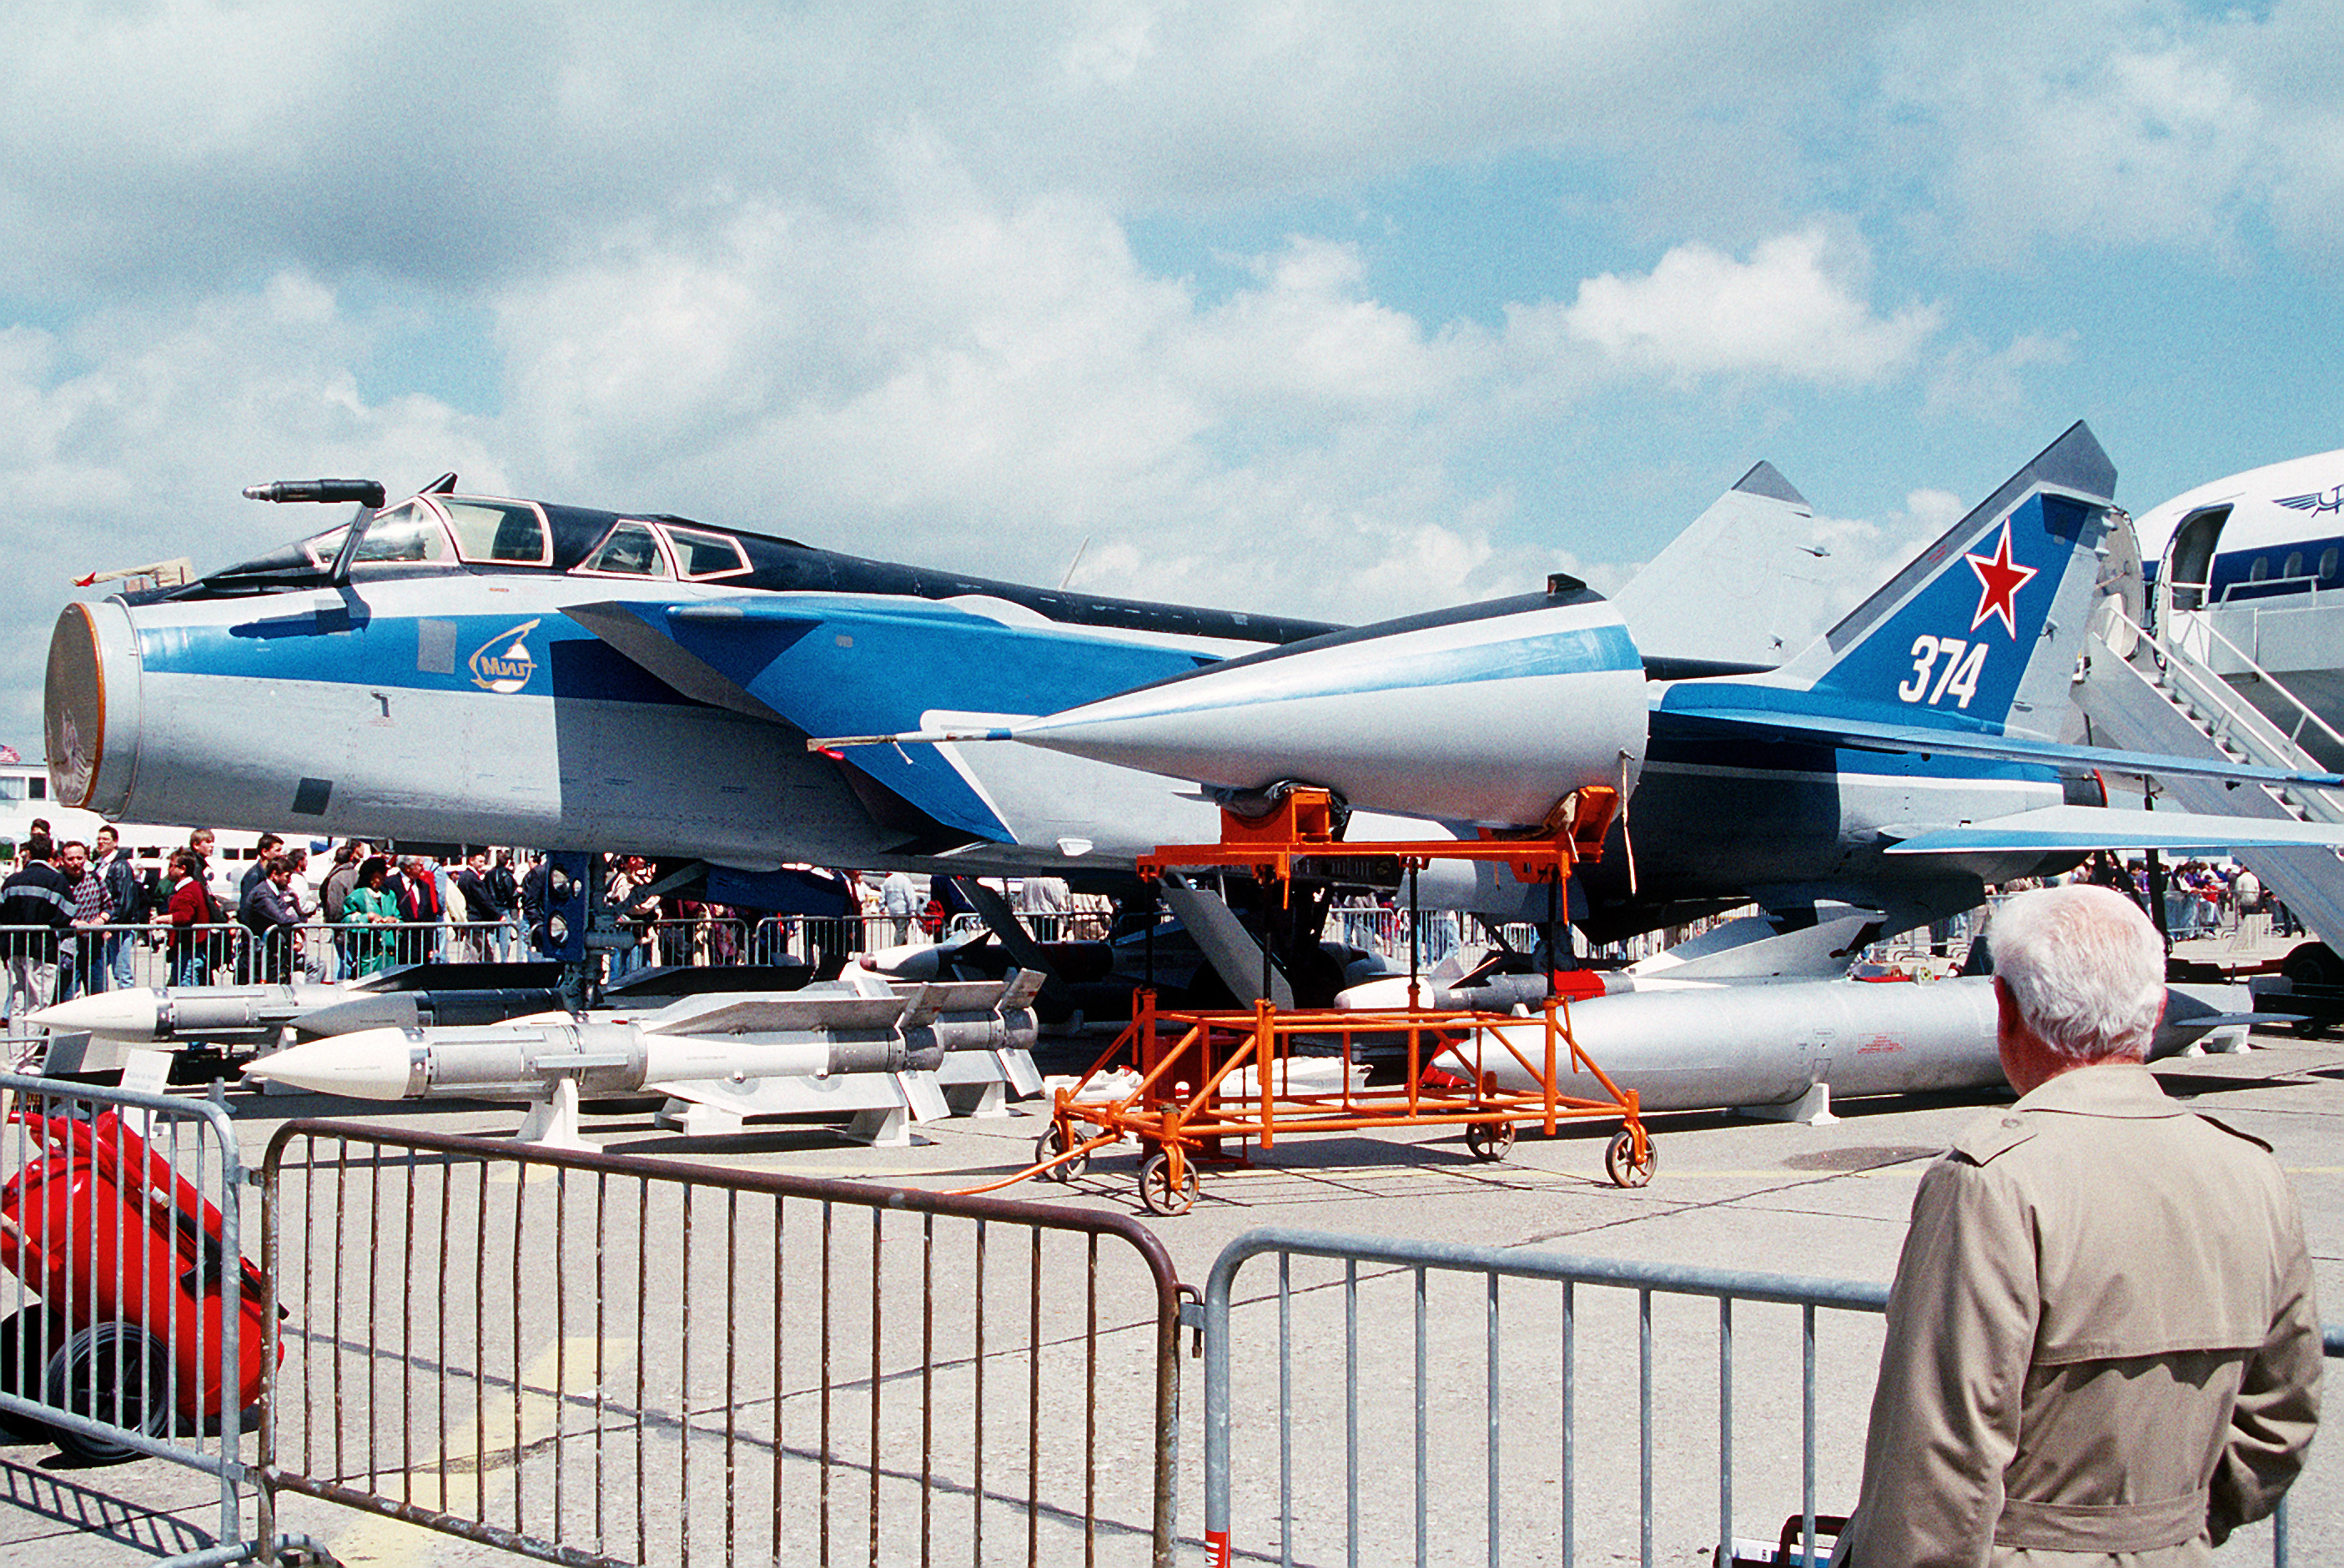 Soviet_MiG-31_Foxhound_aircraft,_1991.JPEG